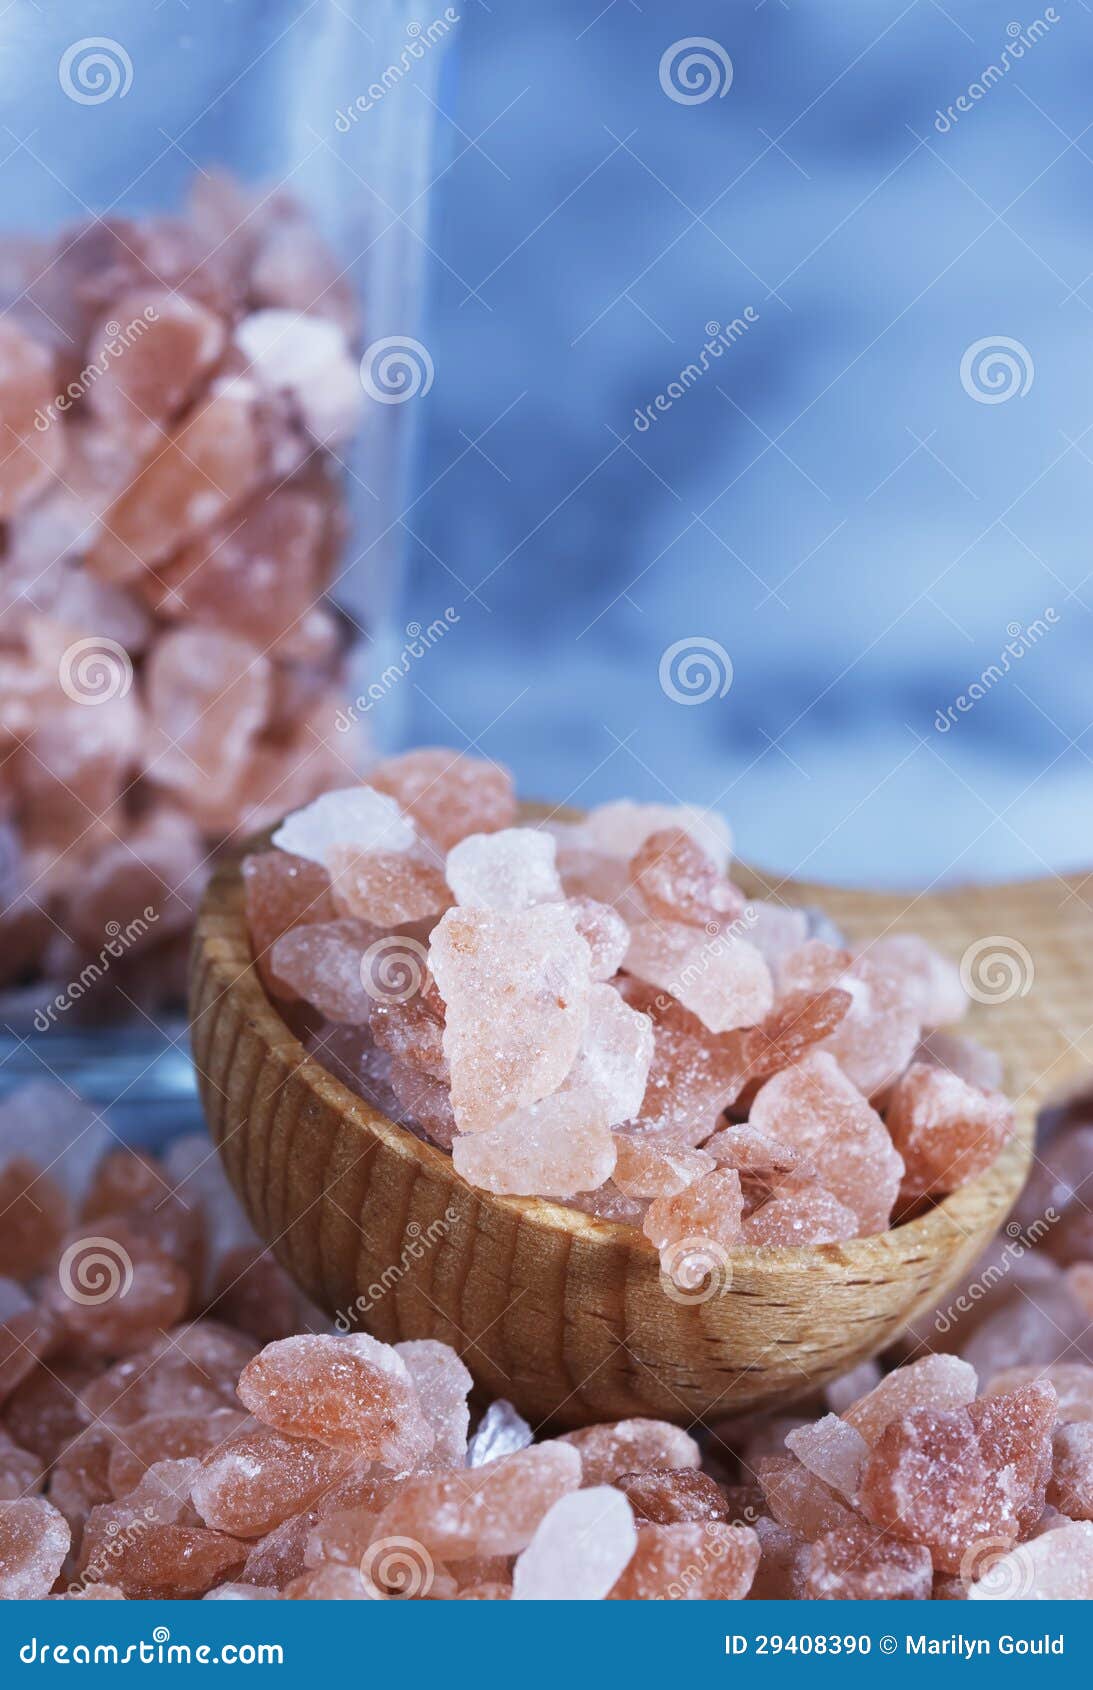 coarse himalayan pink salt